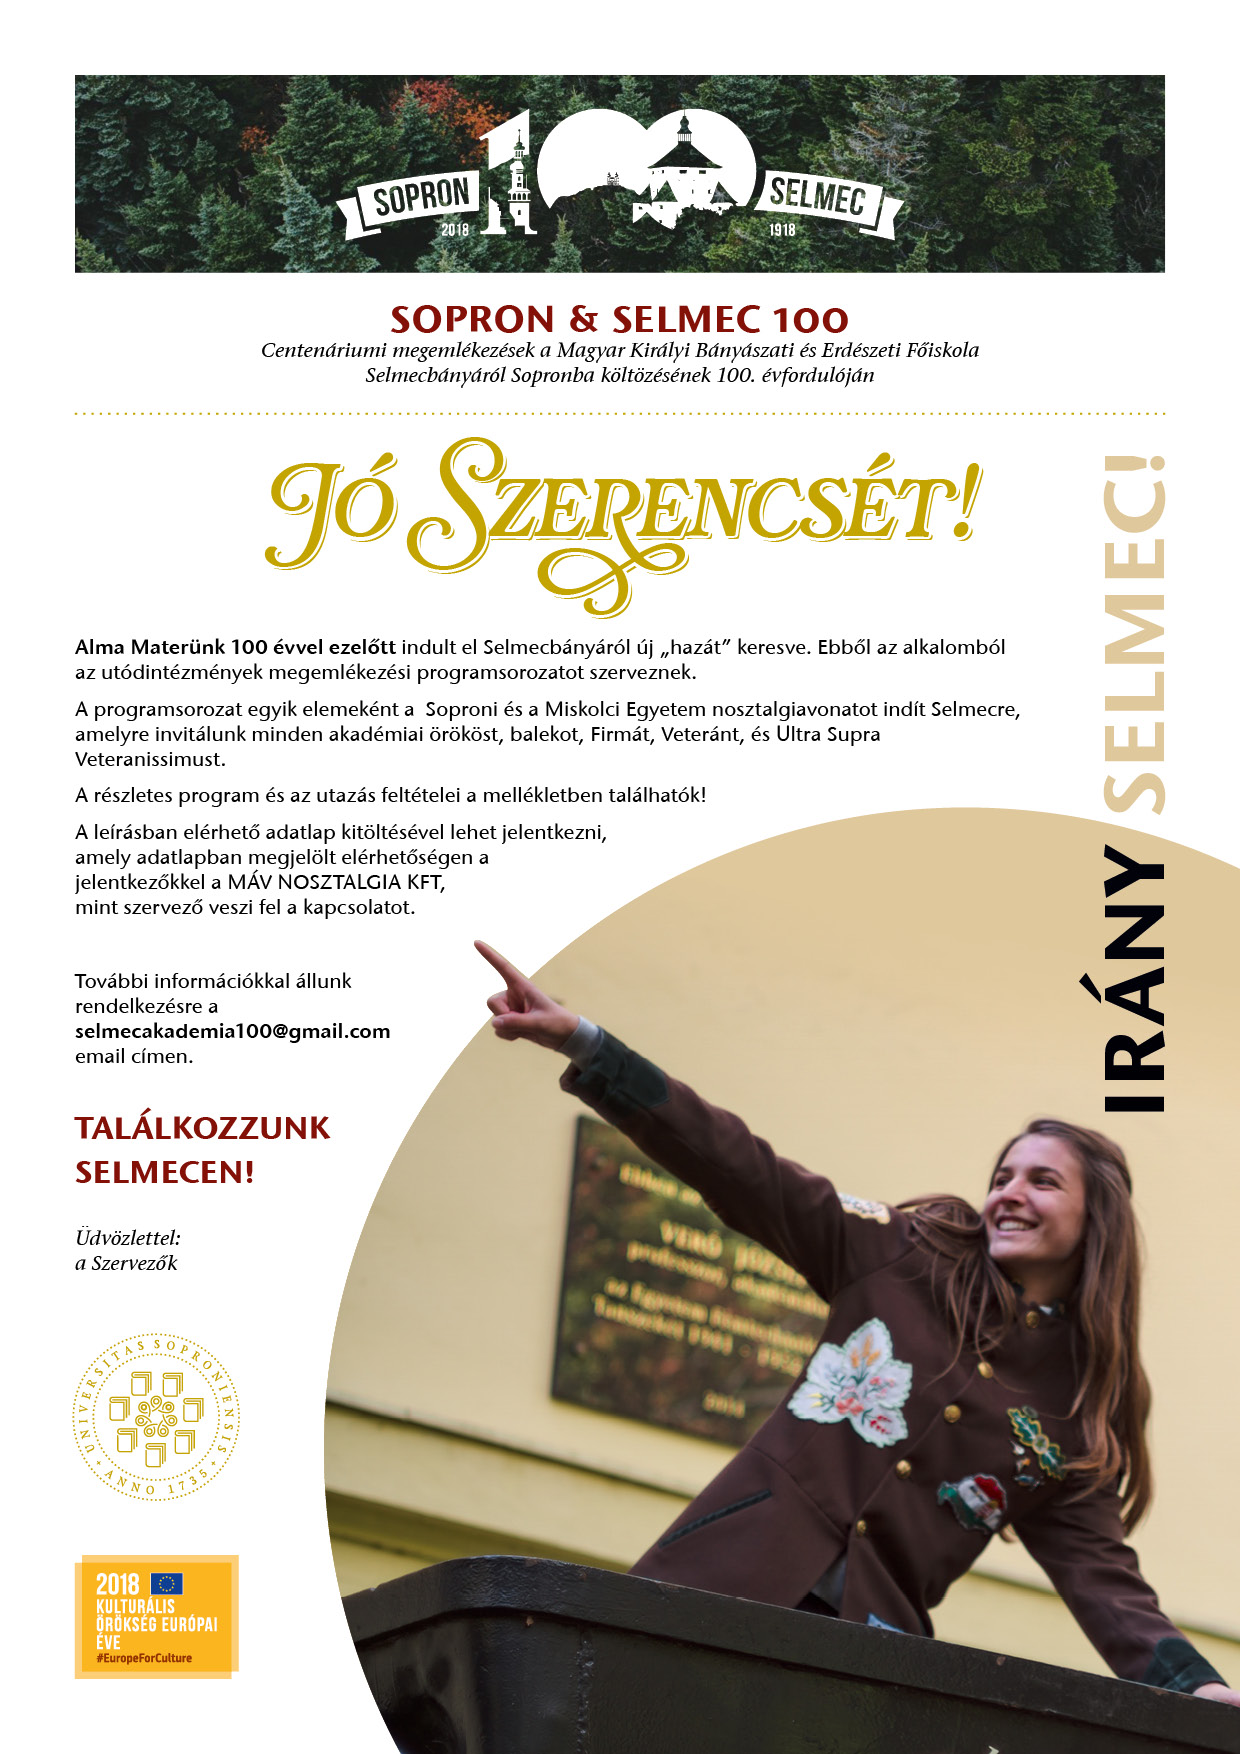 Különleges nosztalgiavonatot indít Selmecre a Soproni Egyetem